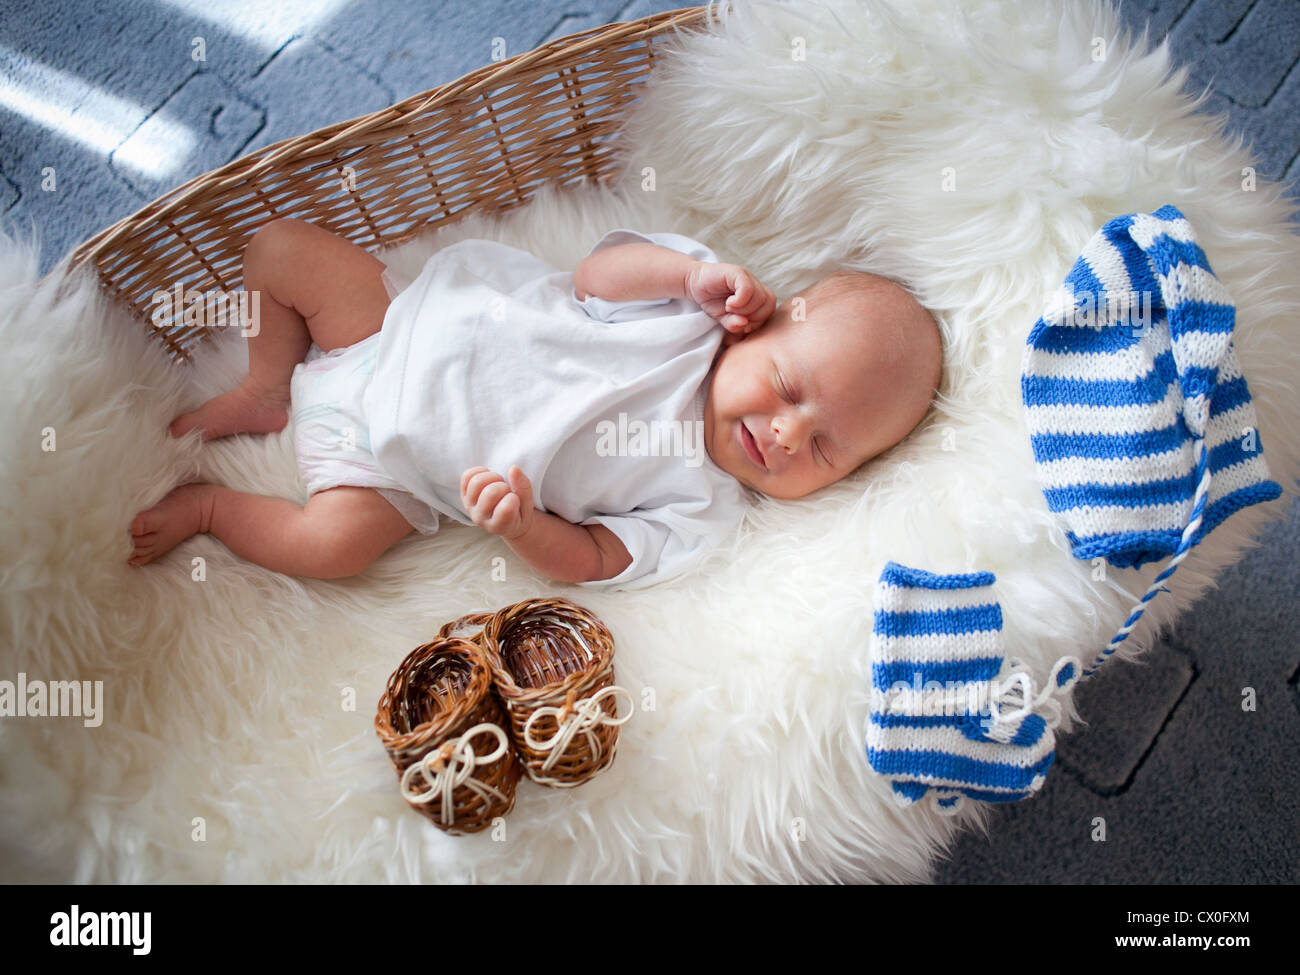 Sleeping newborn baby in wicker basket allongé sur la peau de mouton Banque D'Images